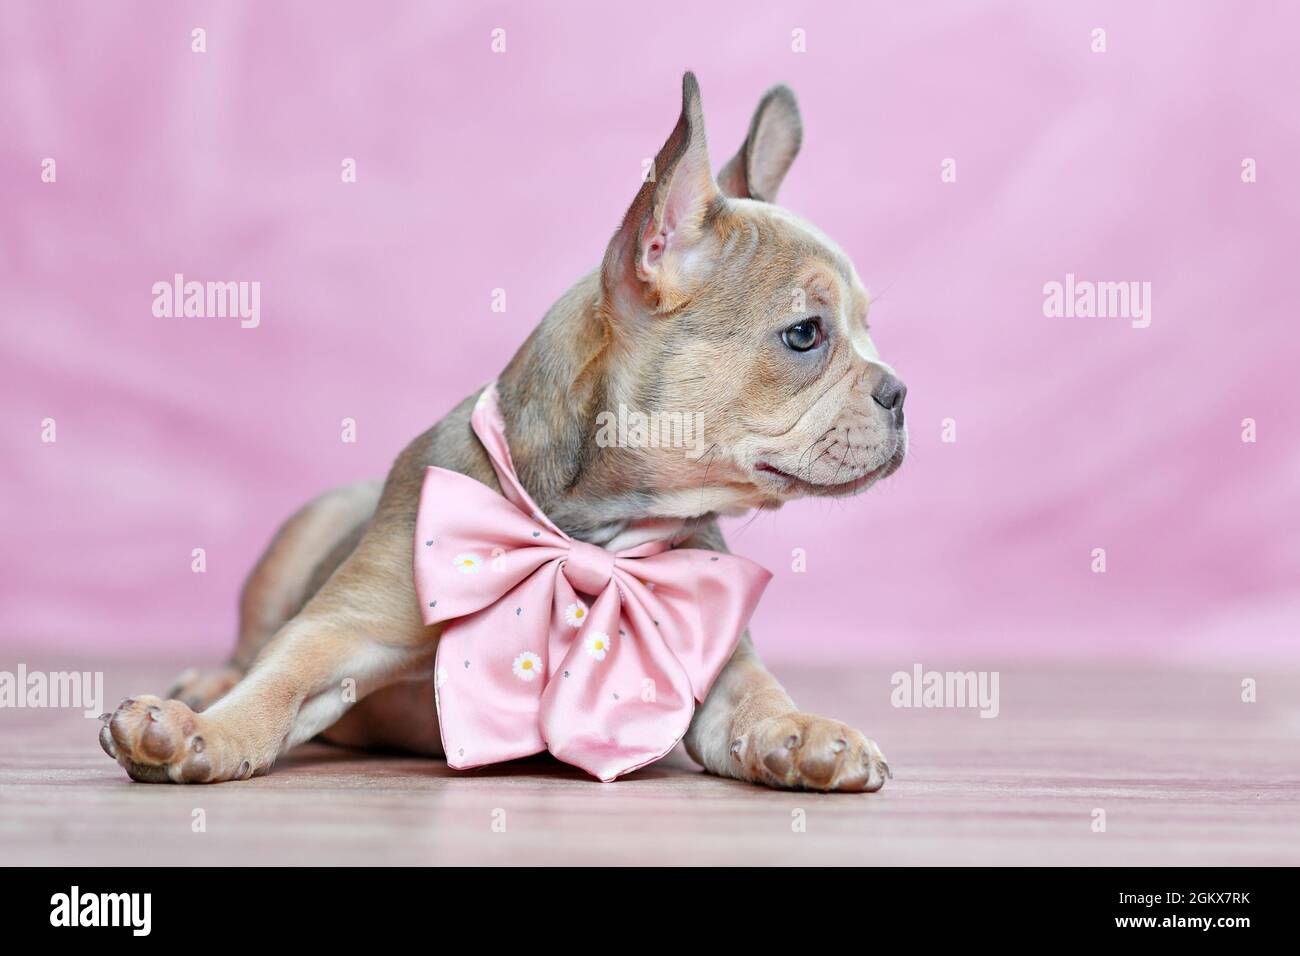 Cucciolo di cane Bulldog francese con bel naso lungo sano indossare nastro collo di fronte a sfondo rosa Foto Stock